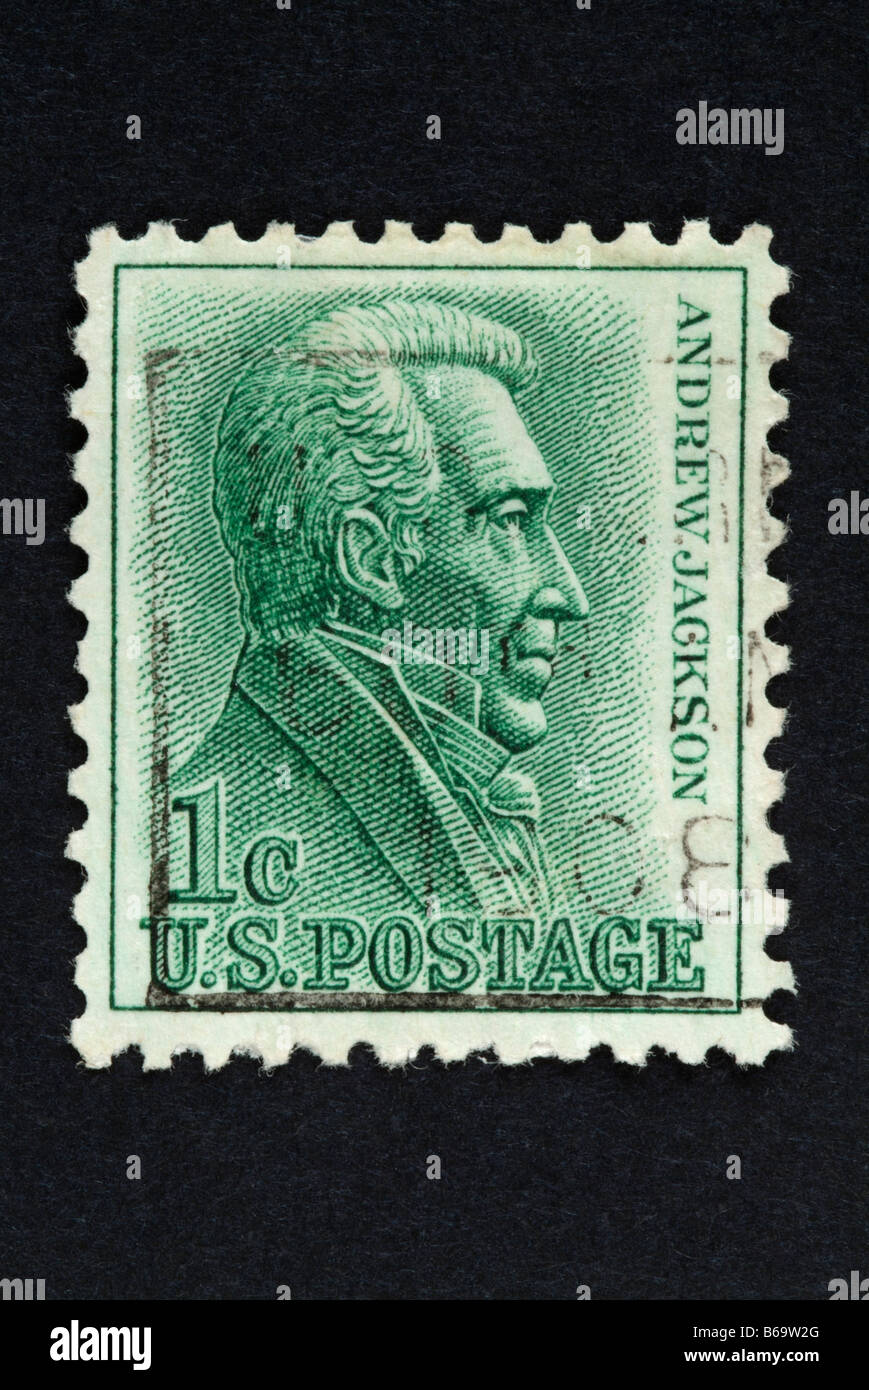 Un timbre-poste de 1 cent US avec l'image d'Andrew Jackson. Banque D'Images